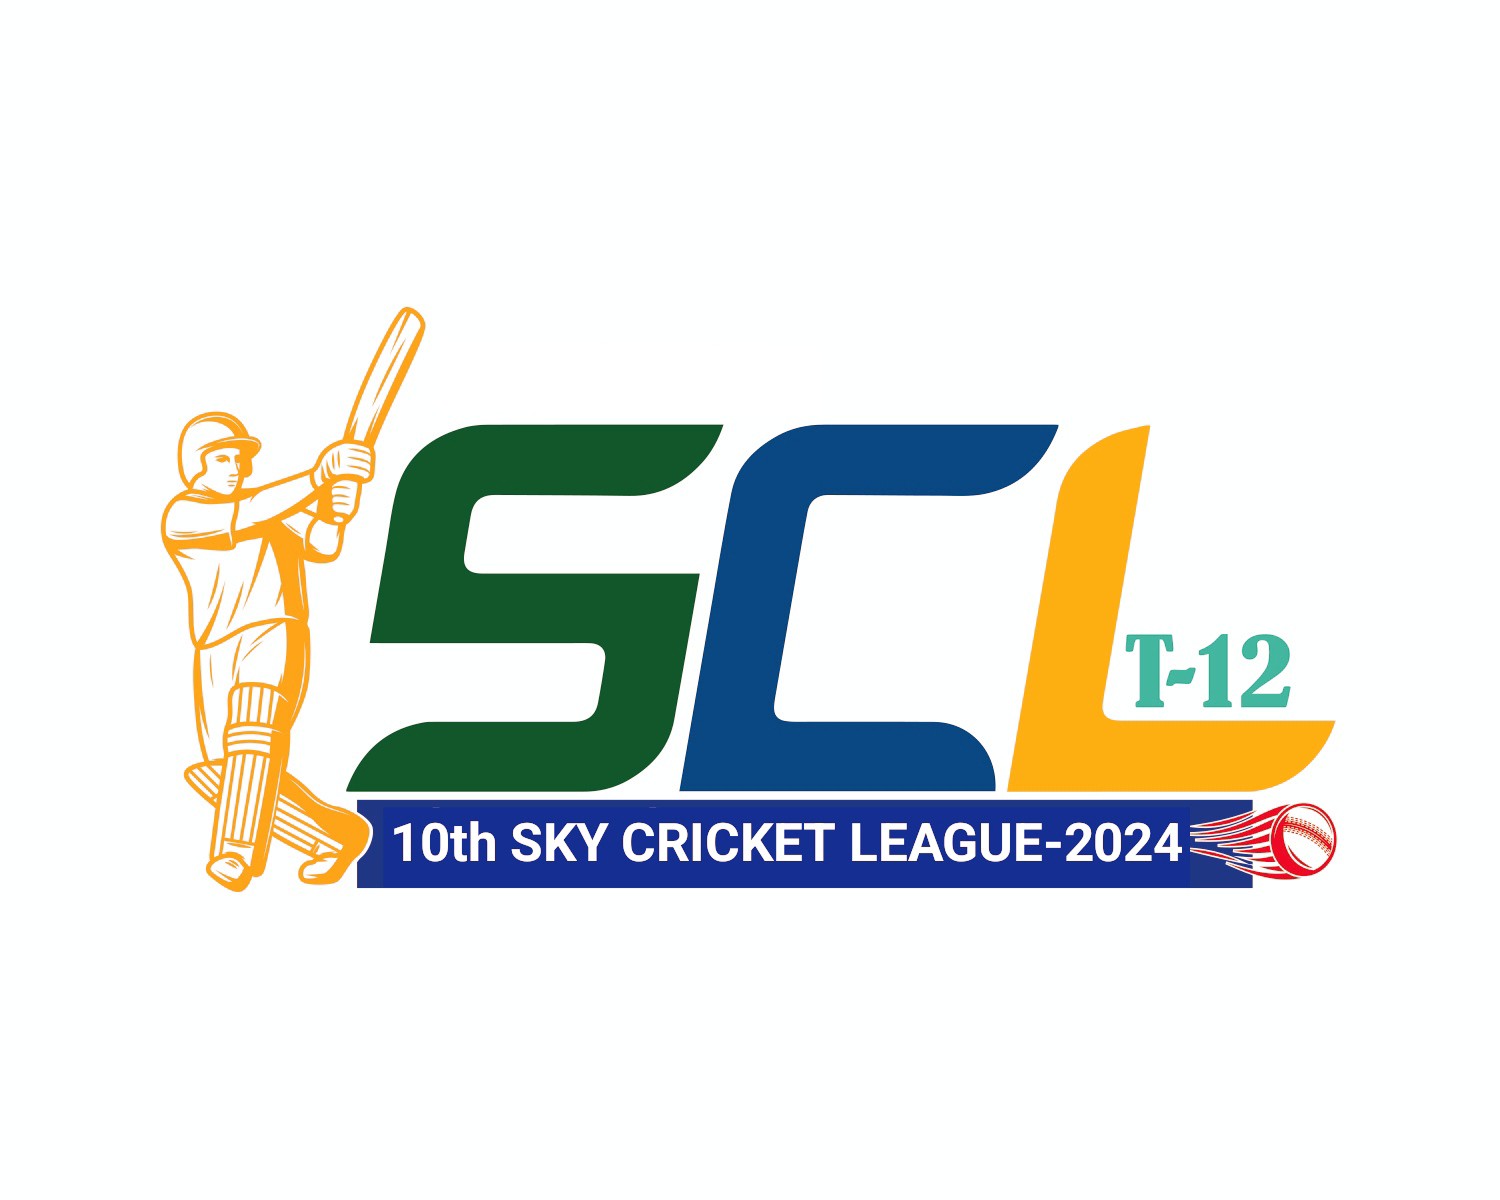 10th Sky Cricket League